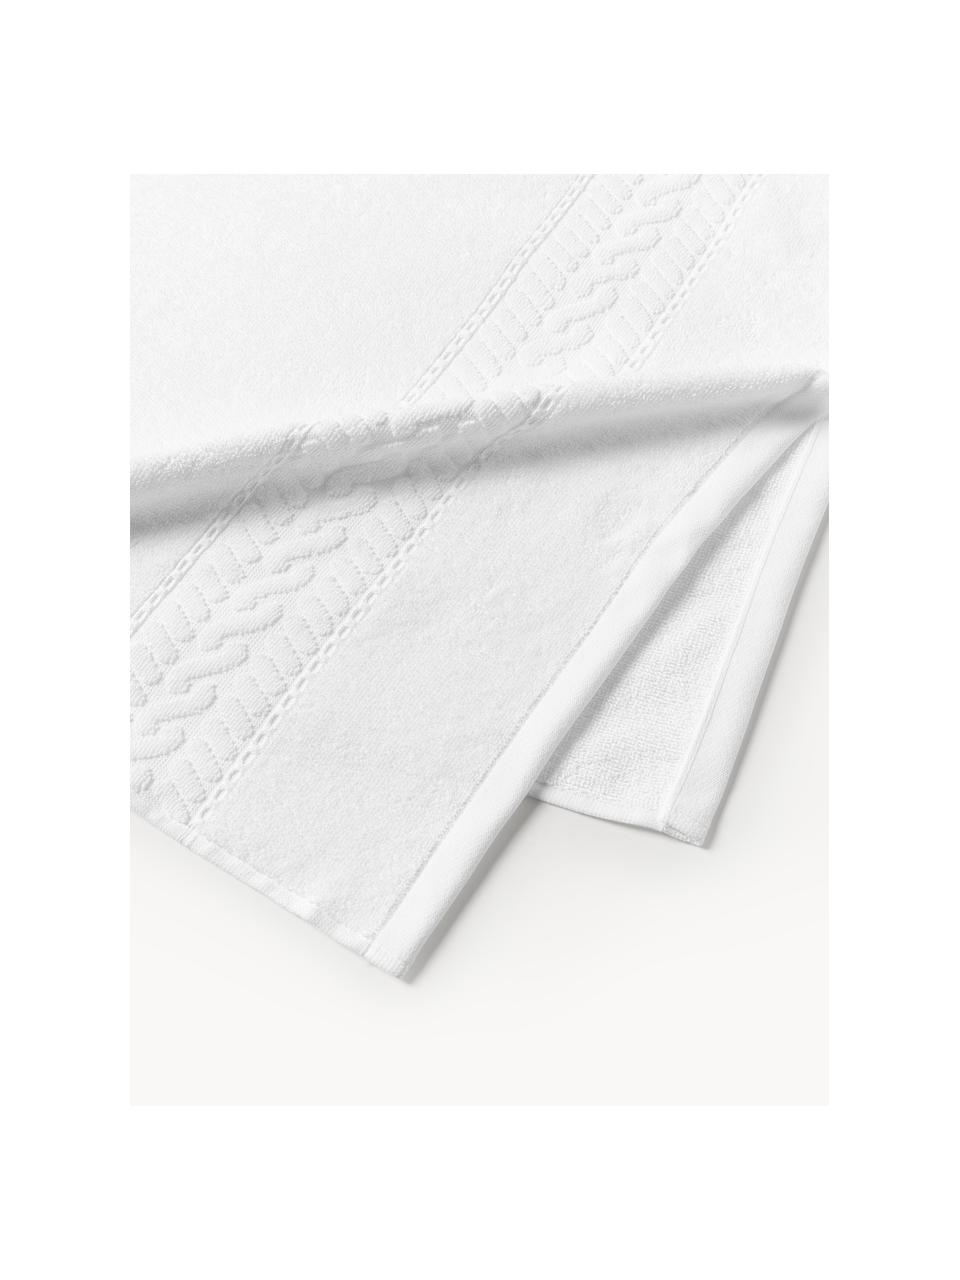 Handdoek Cordelia in verschillende formaten, 100% katoen, Wit, Handdoek, B 50 x L 100 cm, 2 stuks